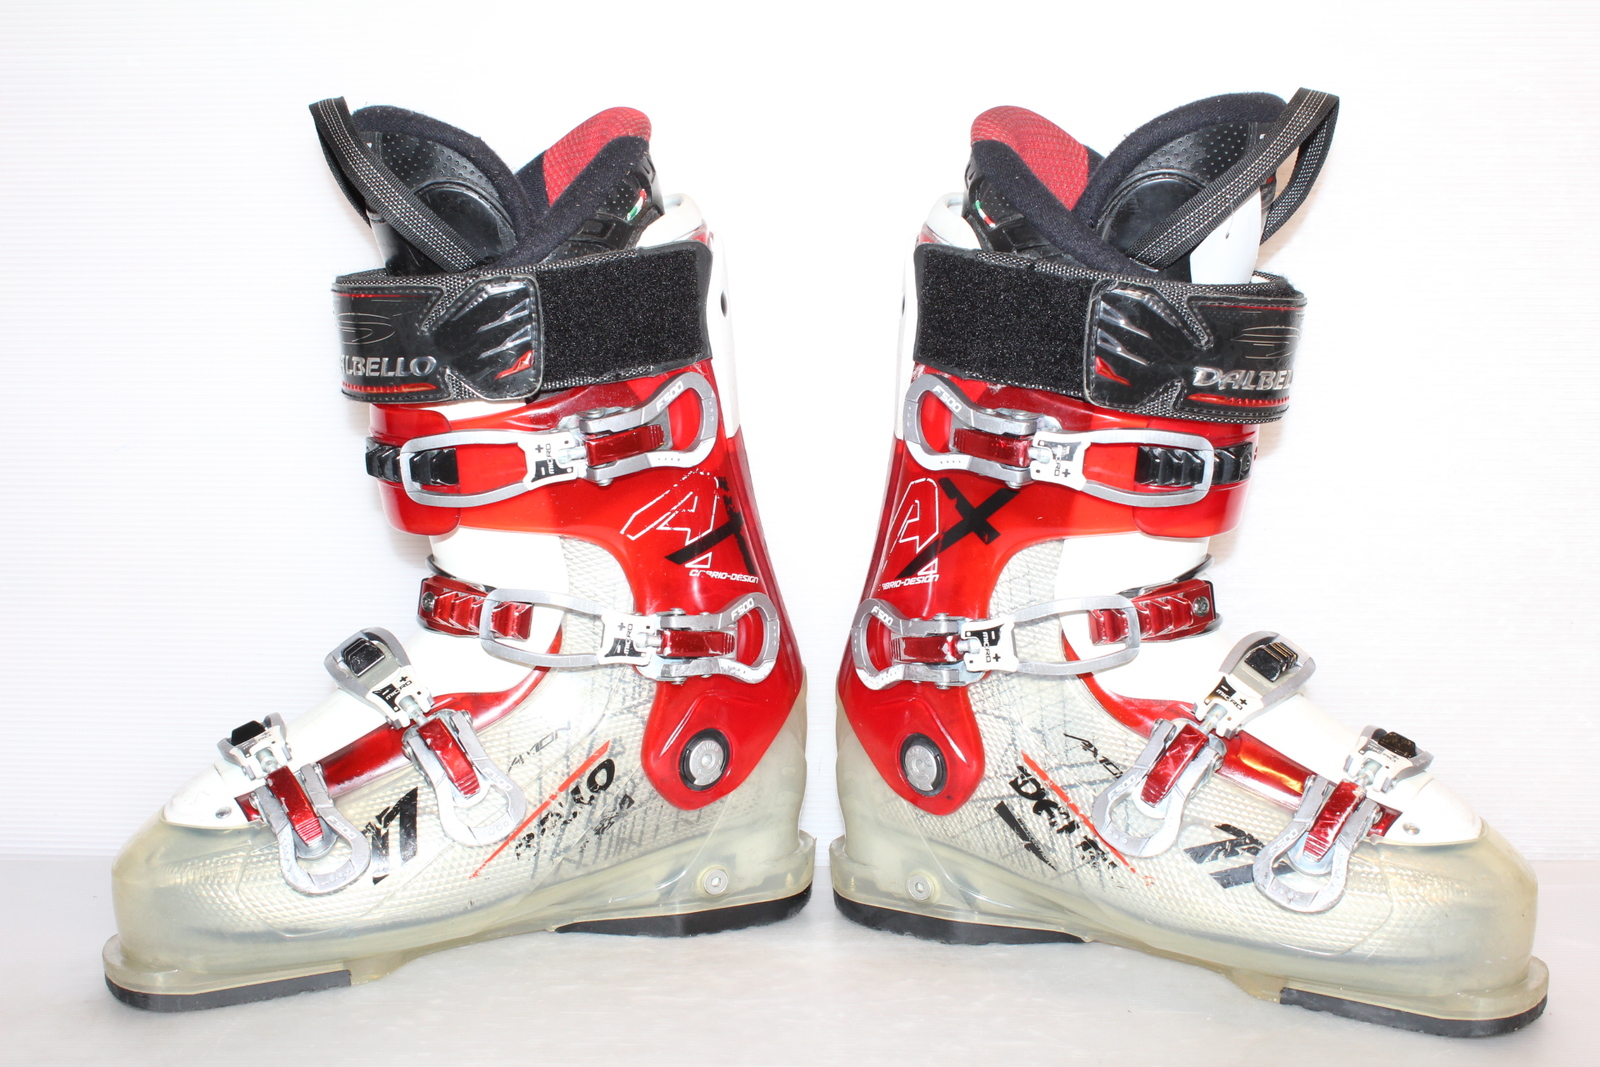 Lyžařské boty Dalbello Axion 11 vel. EU42.5 flexe 80